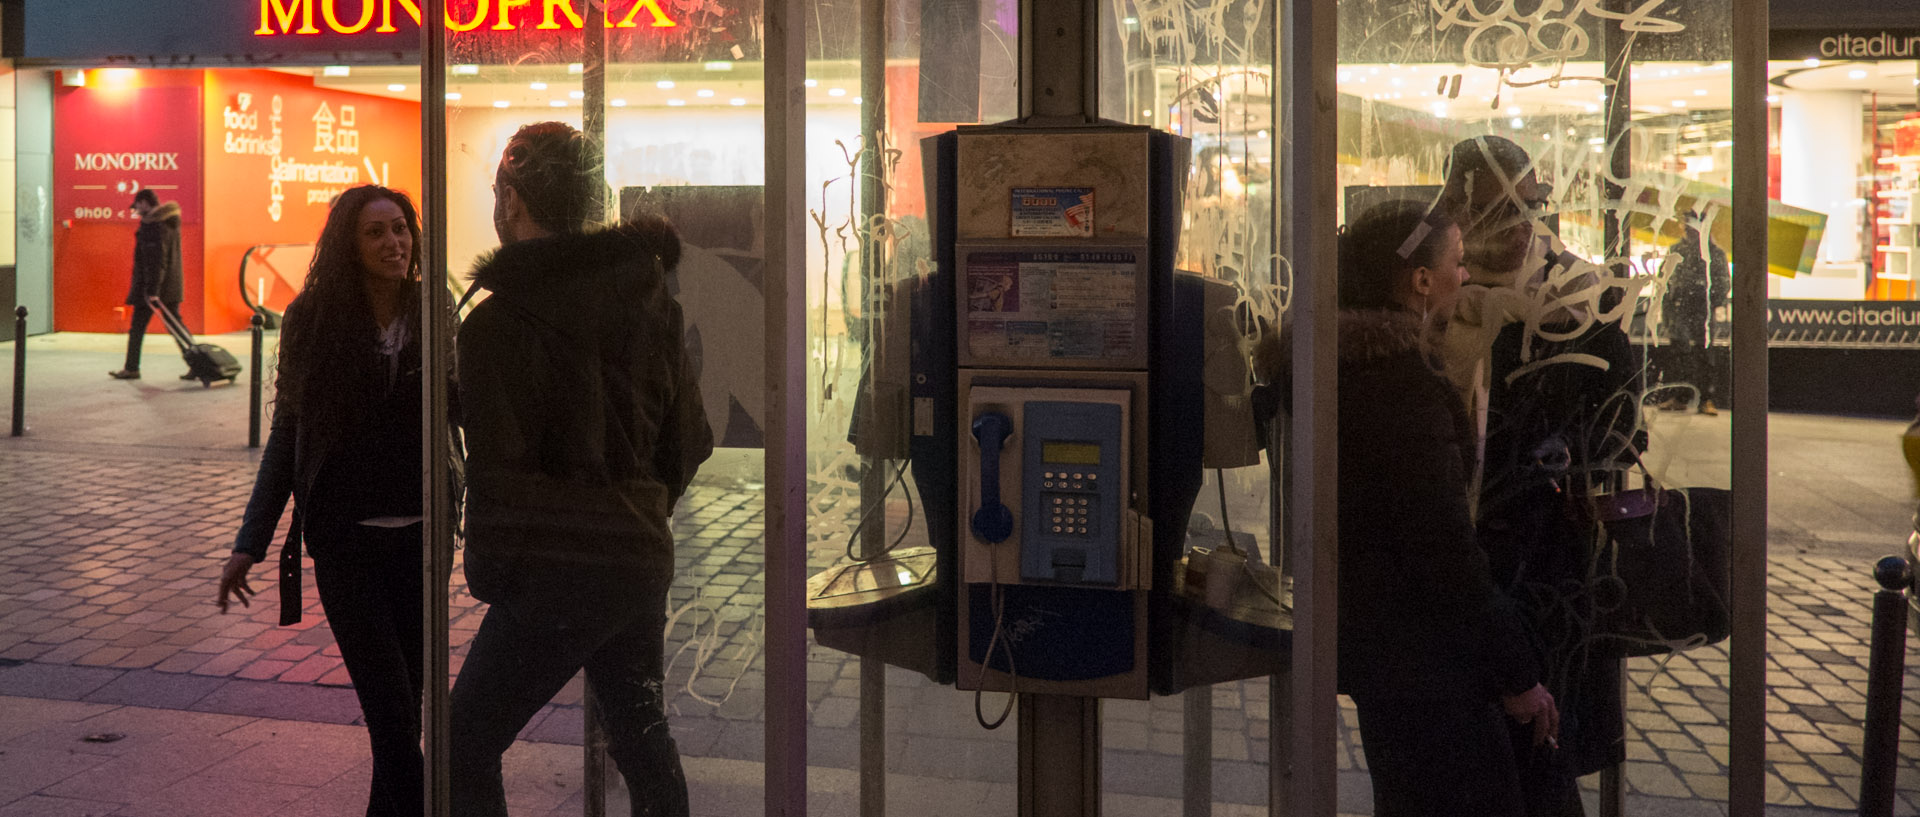 Fumeurs dans une cabine téléphonique, rue Caumartin, à Paris.